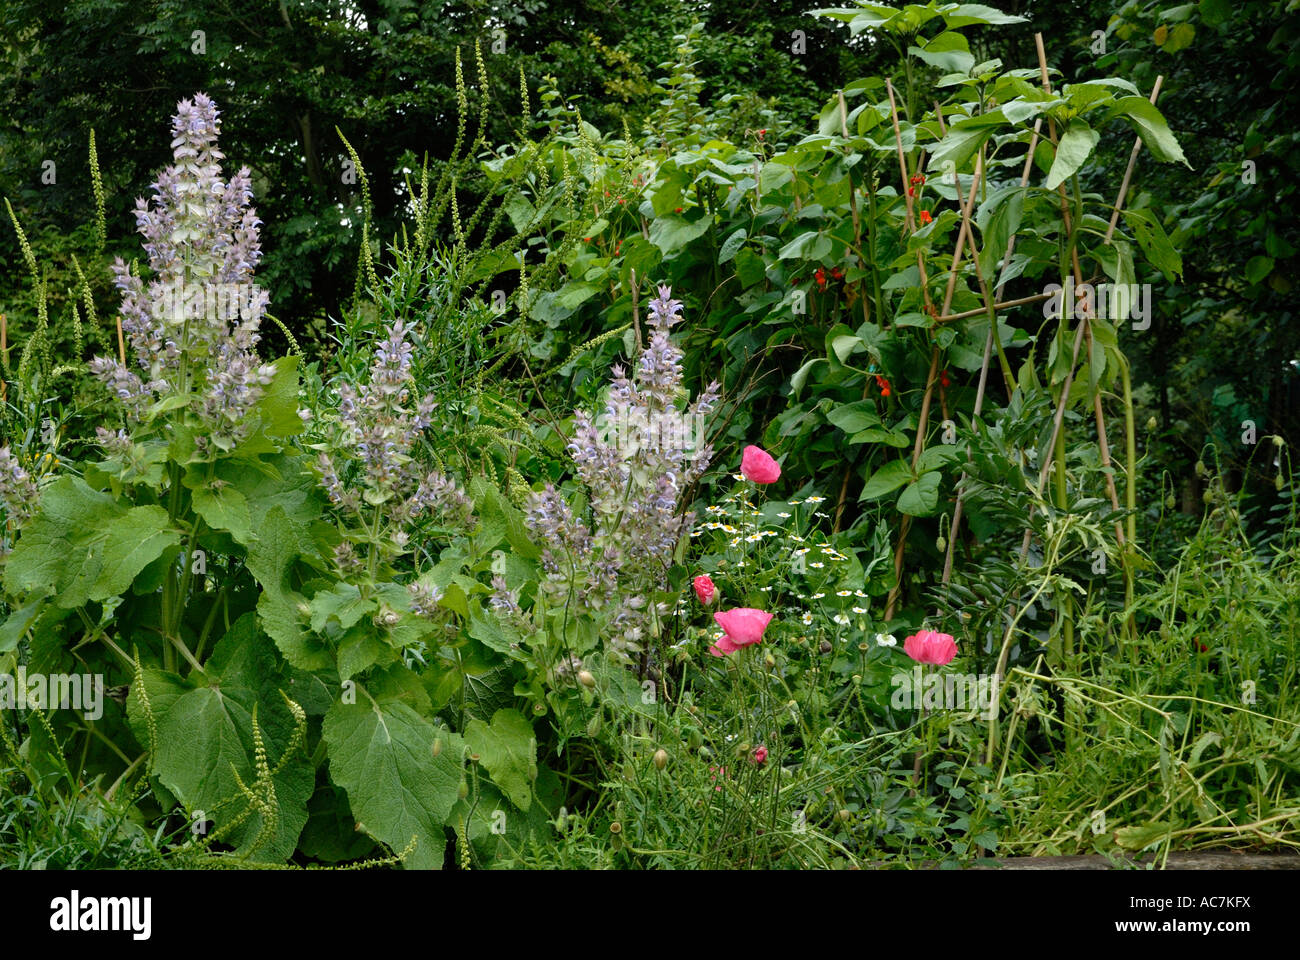 Gemischtes Gemüse- und Kräutergarten - Clary Sage, Salvia sclarea, Mohn und Stangenbohnen, Wales. Stockfoto